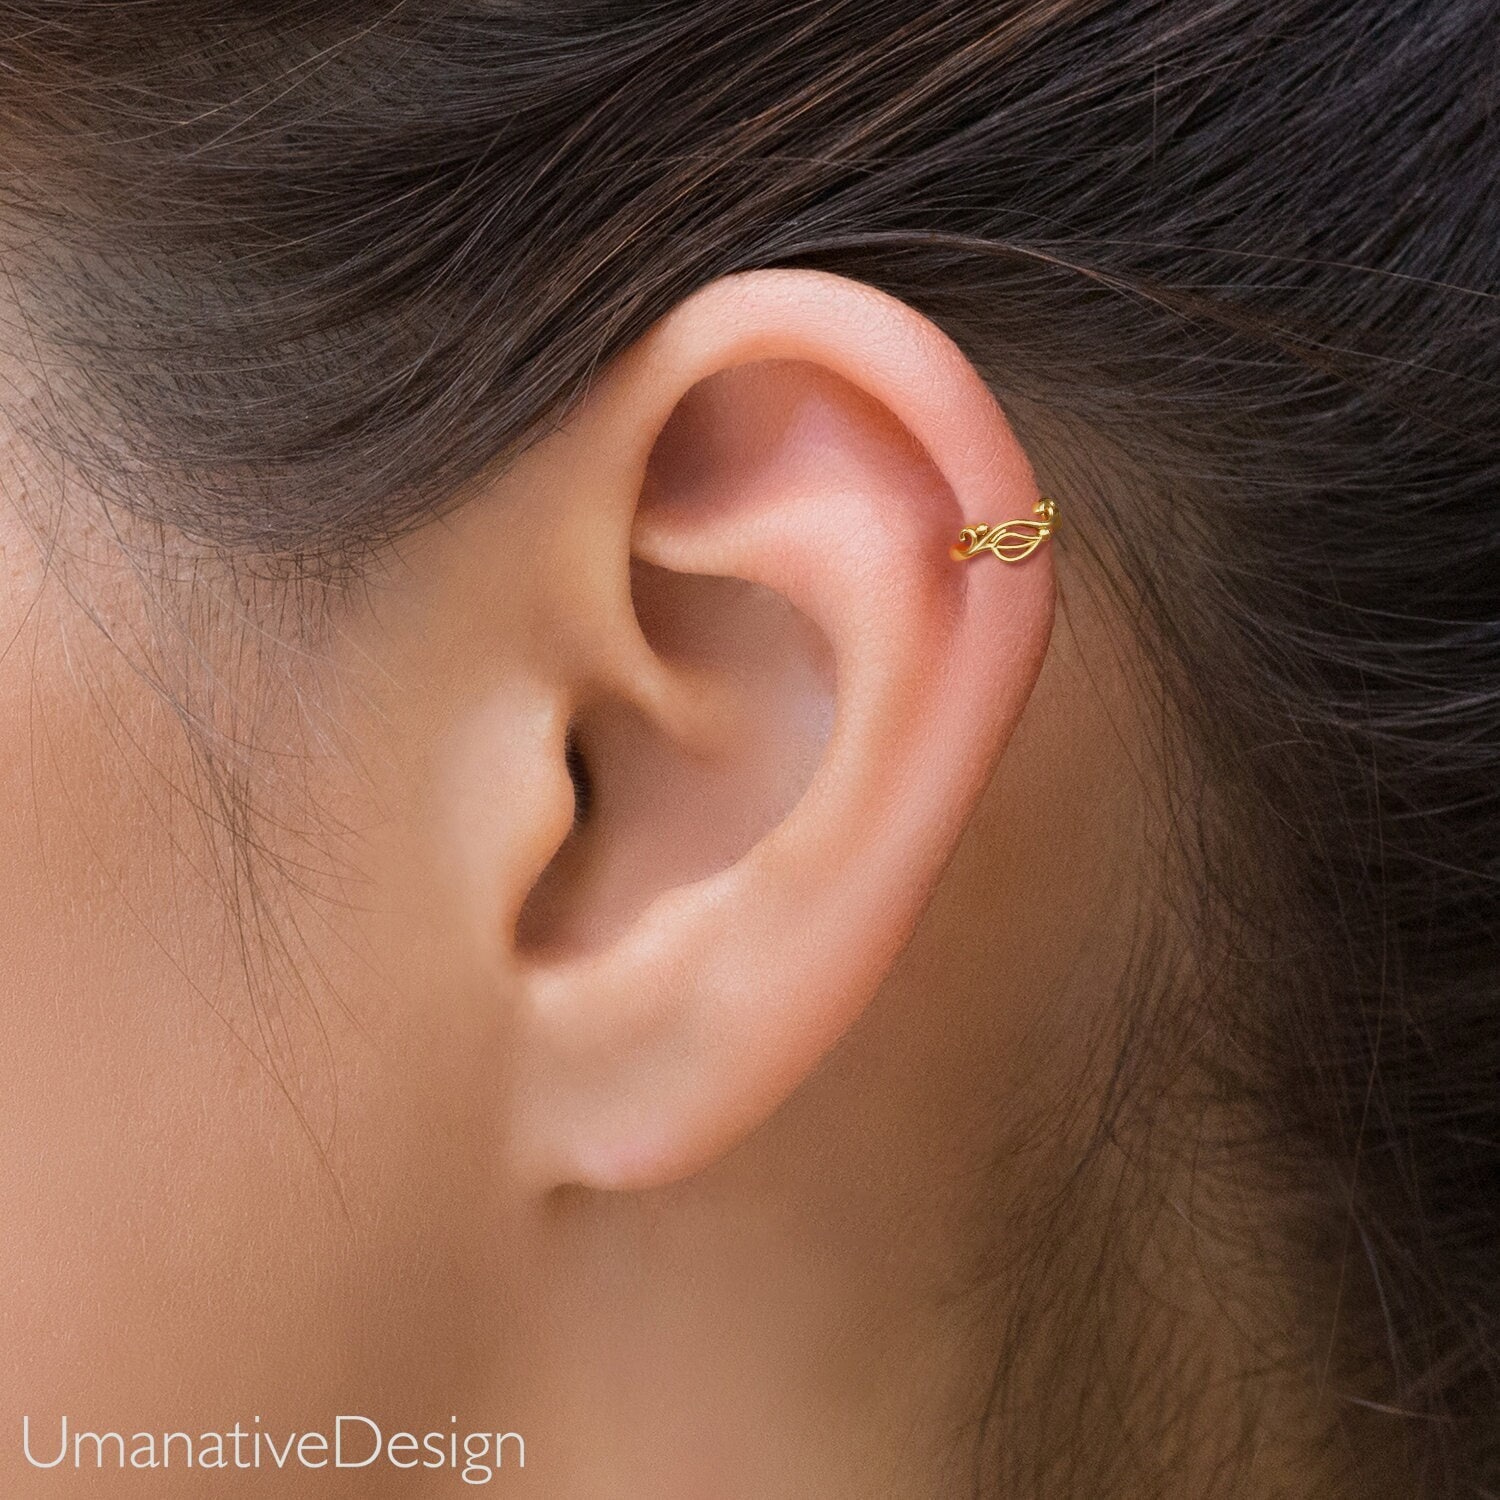 Titanium Earrings Gold Huggie Earrings Small Hoop Earrings Cartilage Earring  Forward Helix Earring Conch Hoop Daith Piercing 18ga 1mm Septum - Etsy |  Pendientes de aro, Daith piercing, Piercing